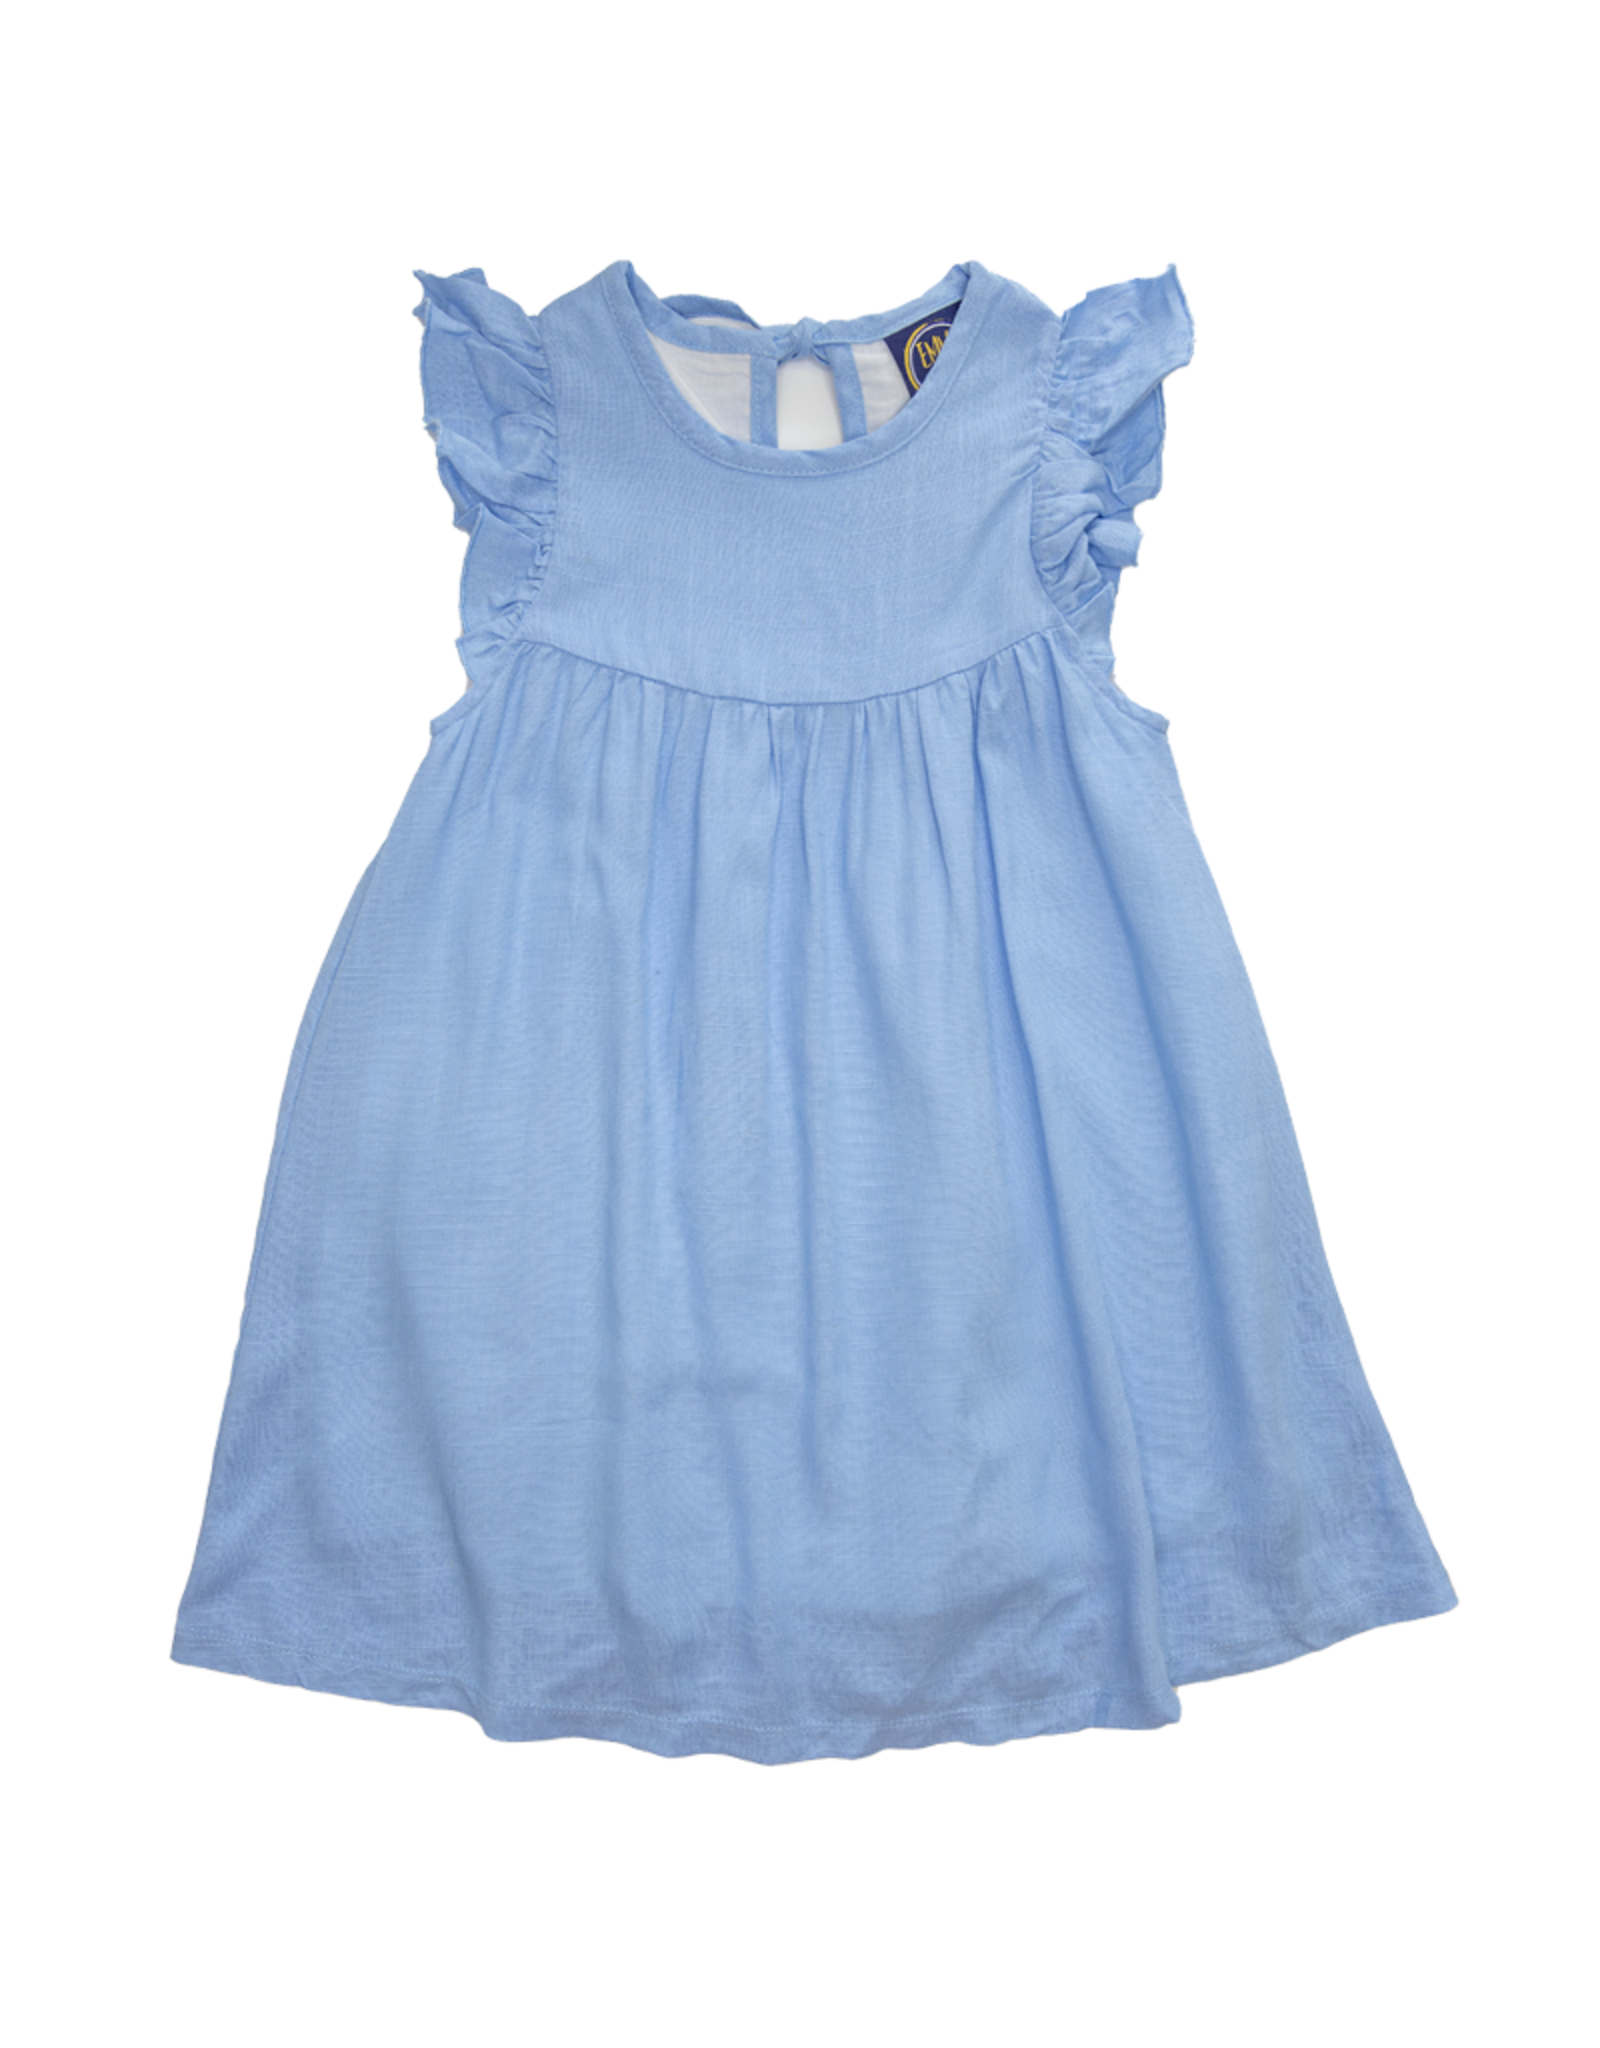 Emma Jean 1006 Mia Linen Dress Blue